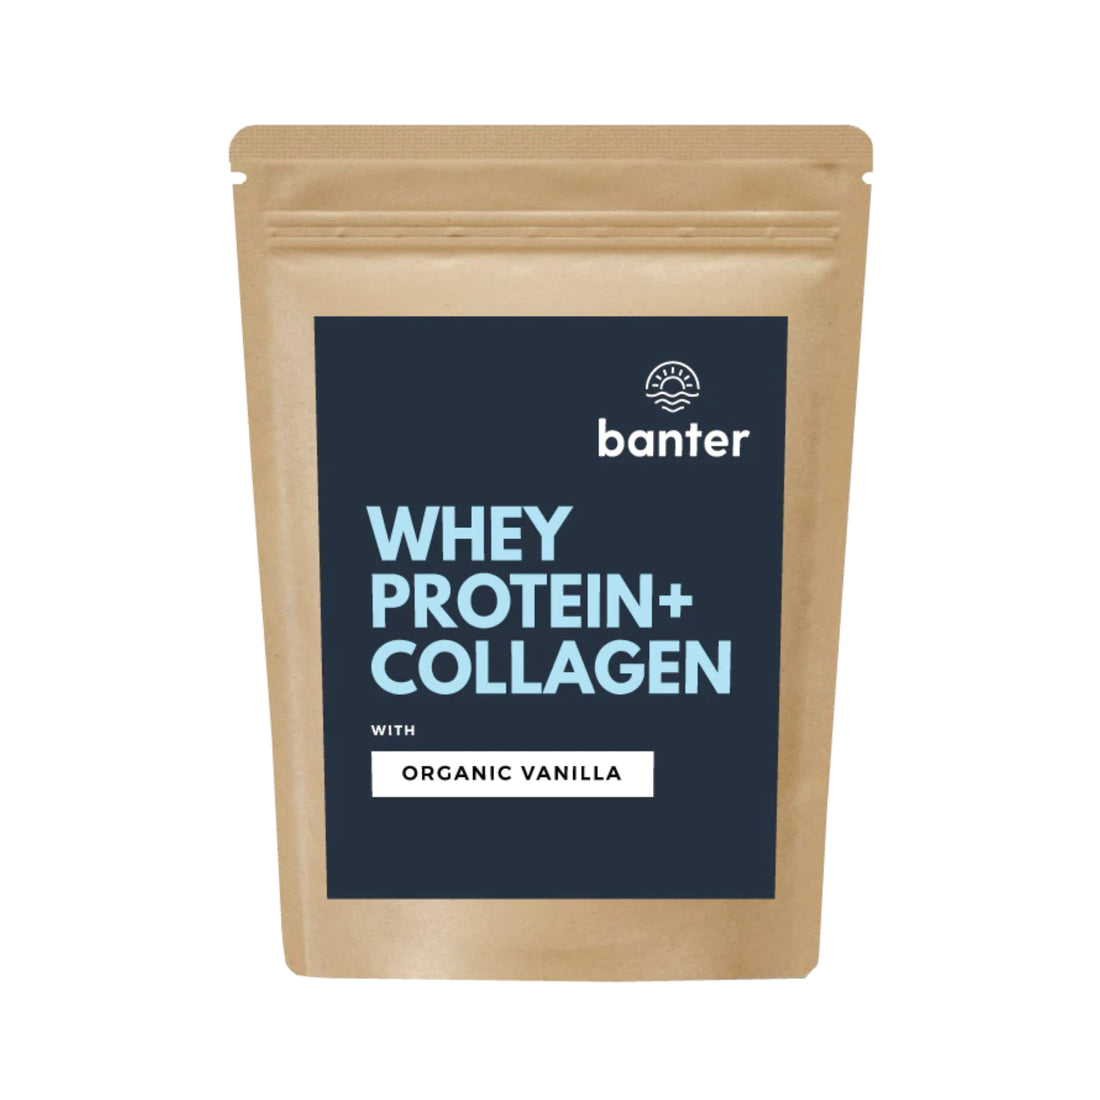 Banter Whey Protein + Collagen